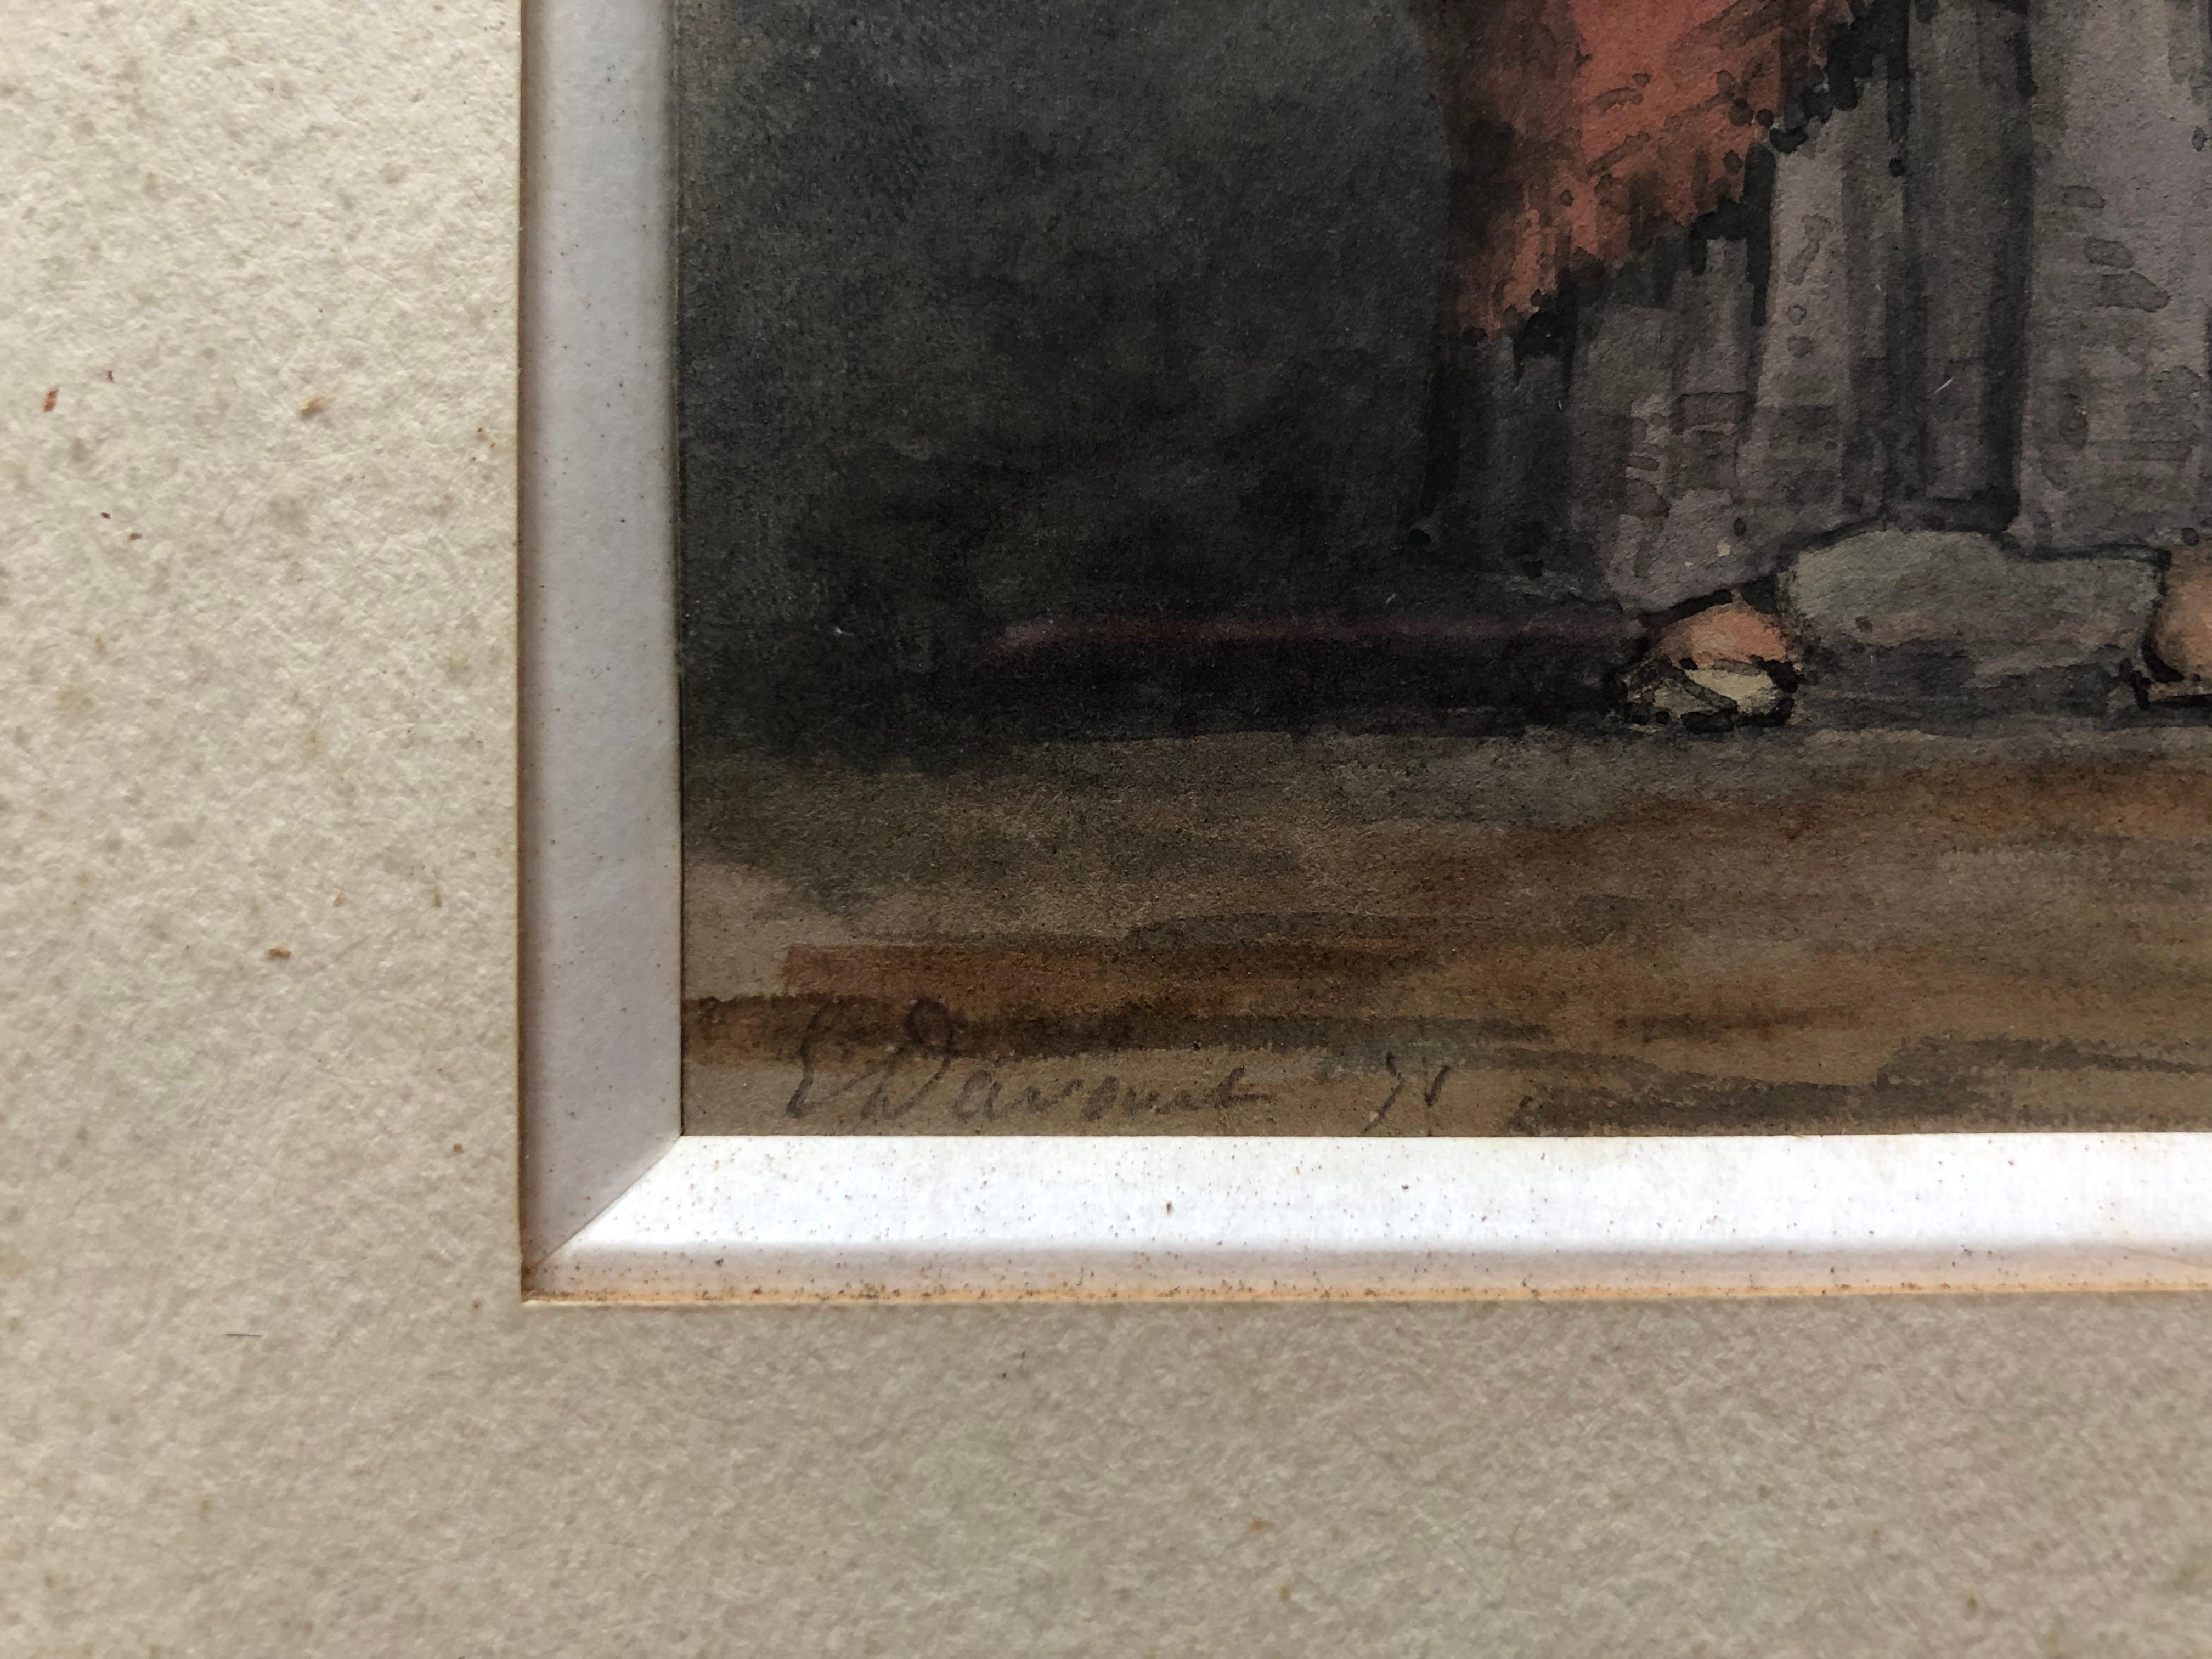 Orientalische Frau.
Aquarell aus dem 19. Jahrhundert.
Zu identifizierende Unterschrift.
Gerahmt und unter Glas.
Aquarell (auf Sicht): 20,5 x 10 cm
Rahmen: 33,5 x 23 cm